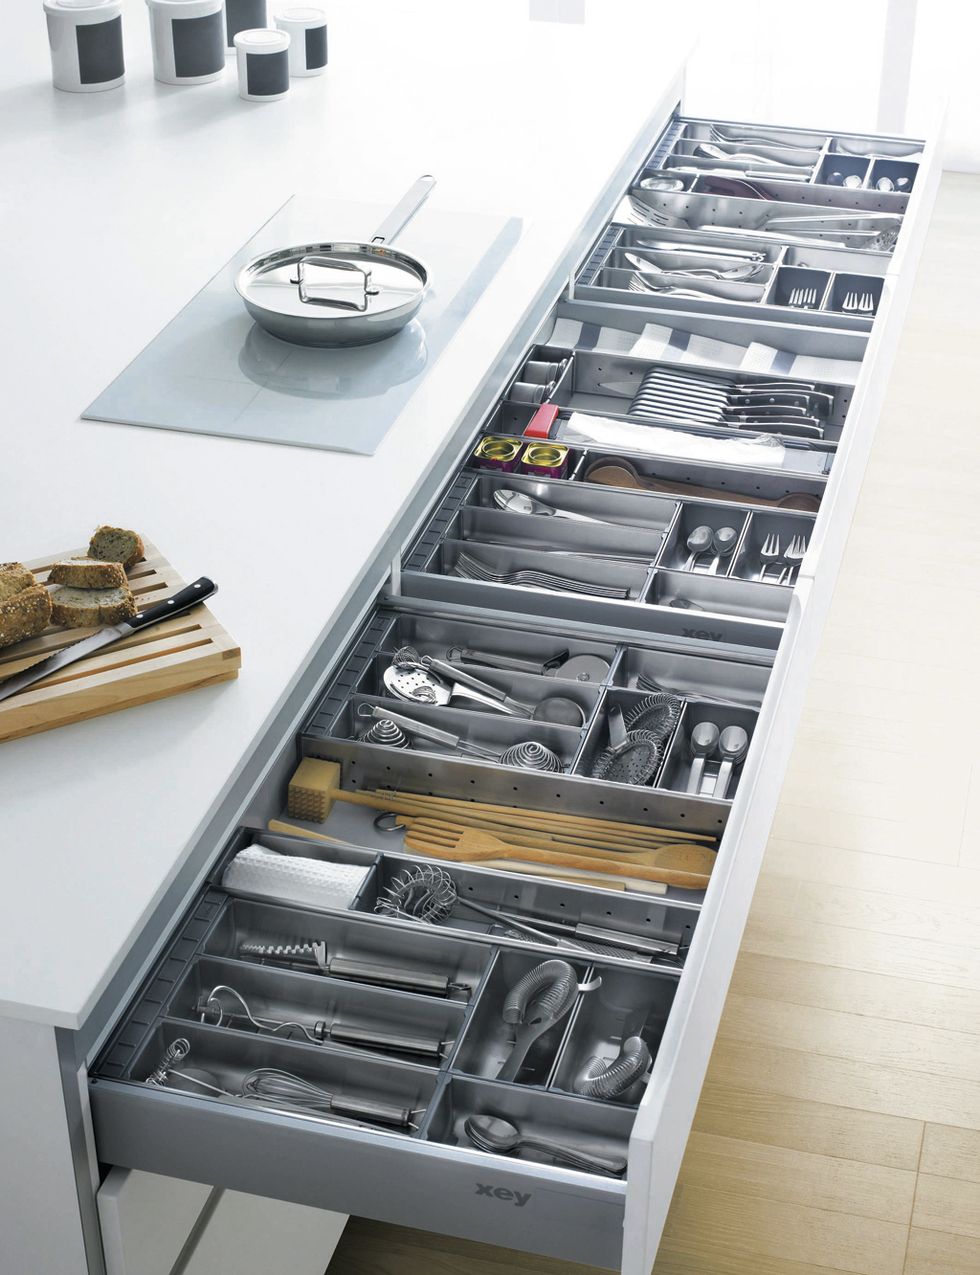 <p>Accesorios adaptables organizan el interior de los cajones de las cocinas Xey.&nbsp;</p>